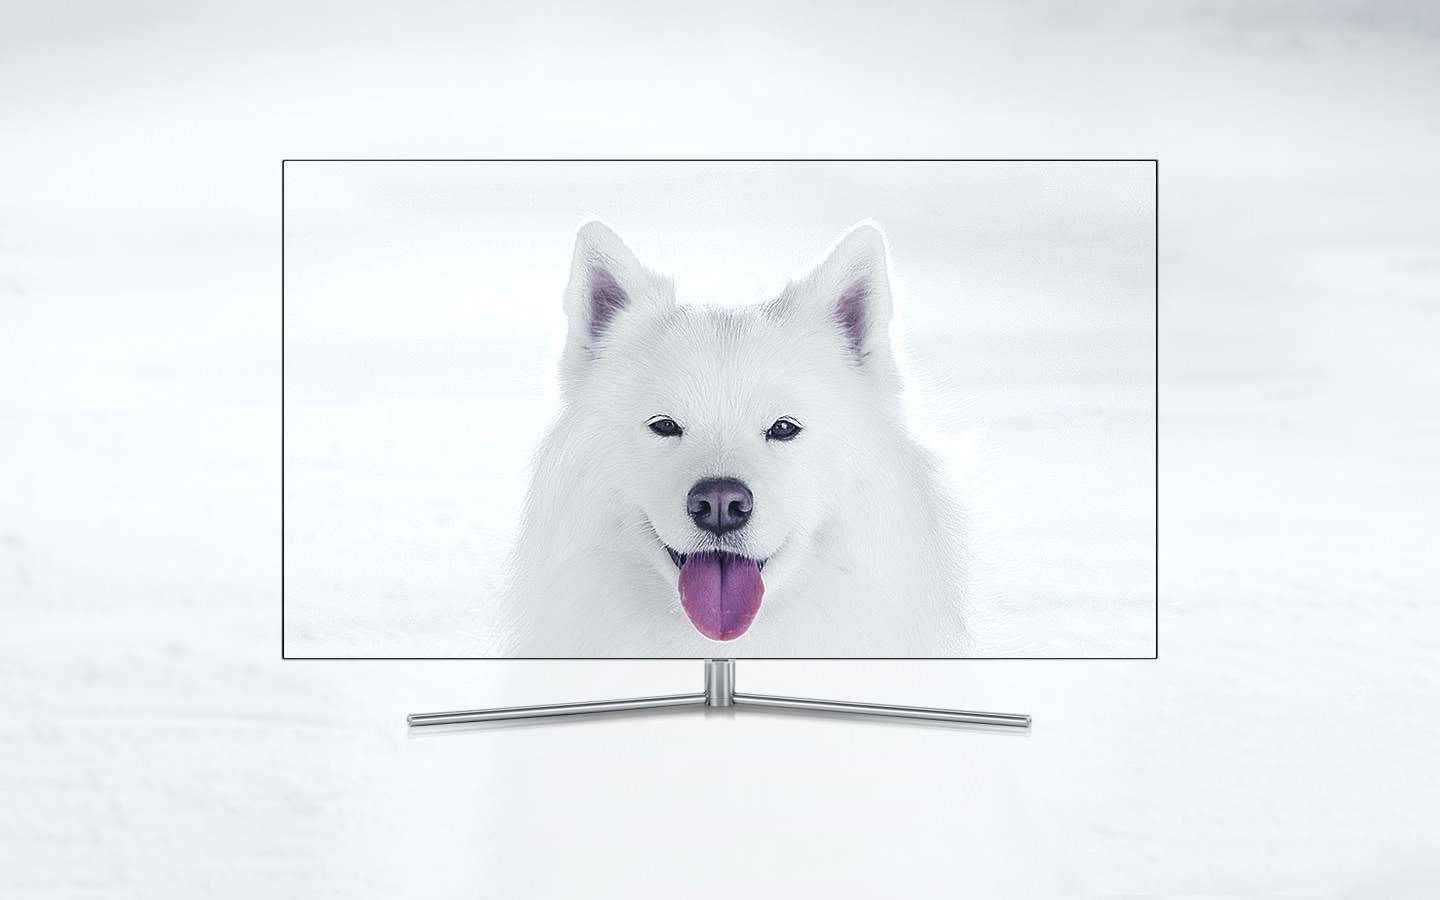 QLED TV 제품이 정면으로 놓여져 있고 화면 안에는 혀를 내밀고 있는 흰색 강아지가 선명하게 보여집니다.